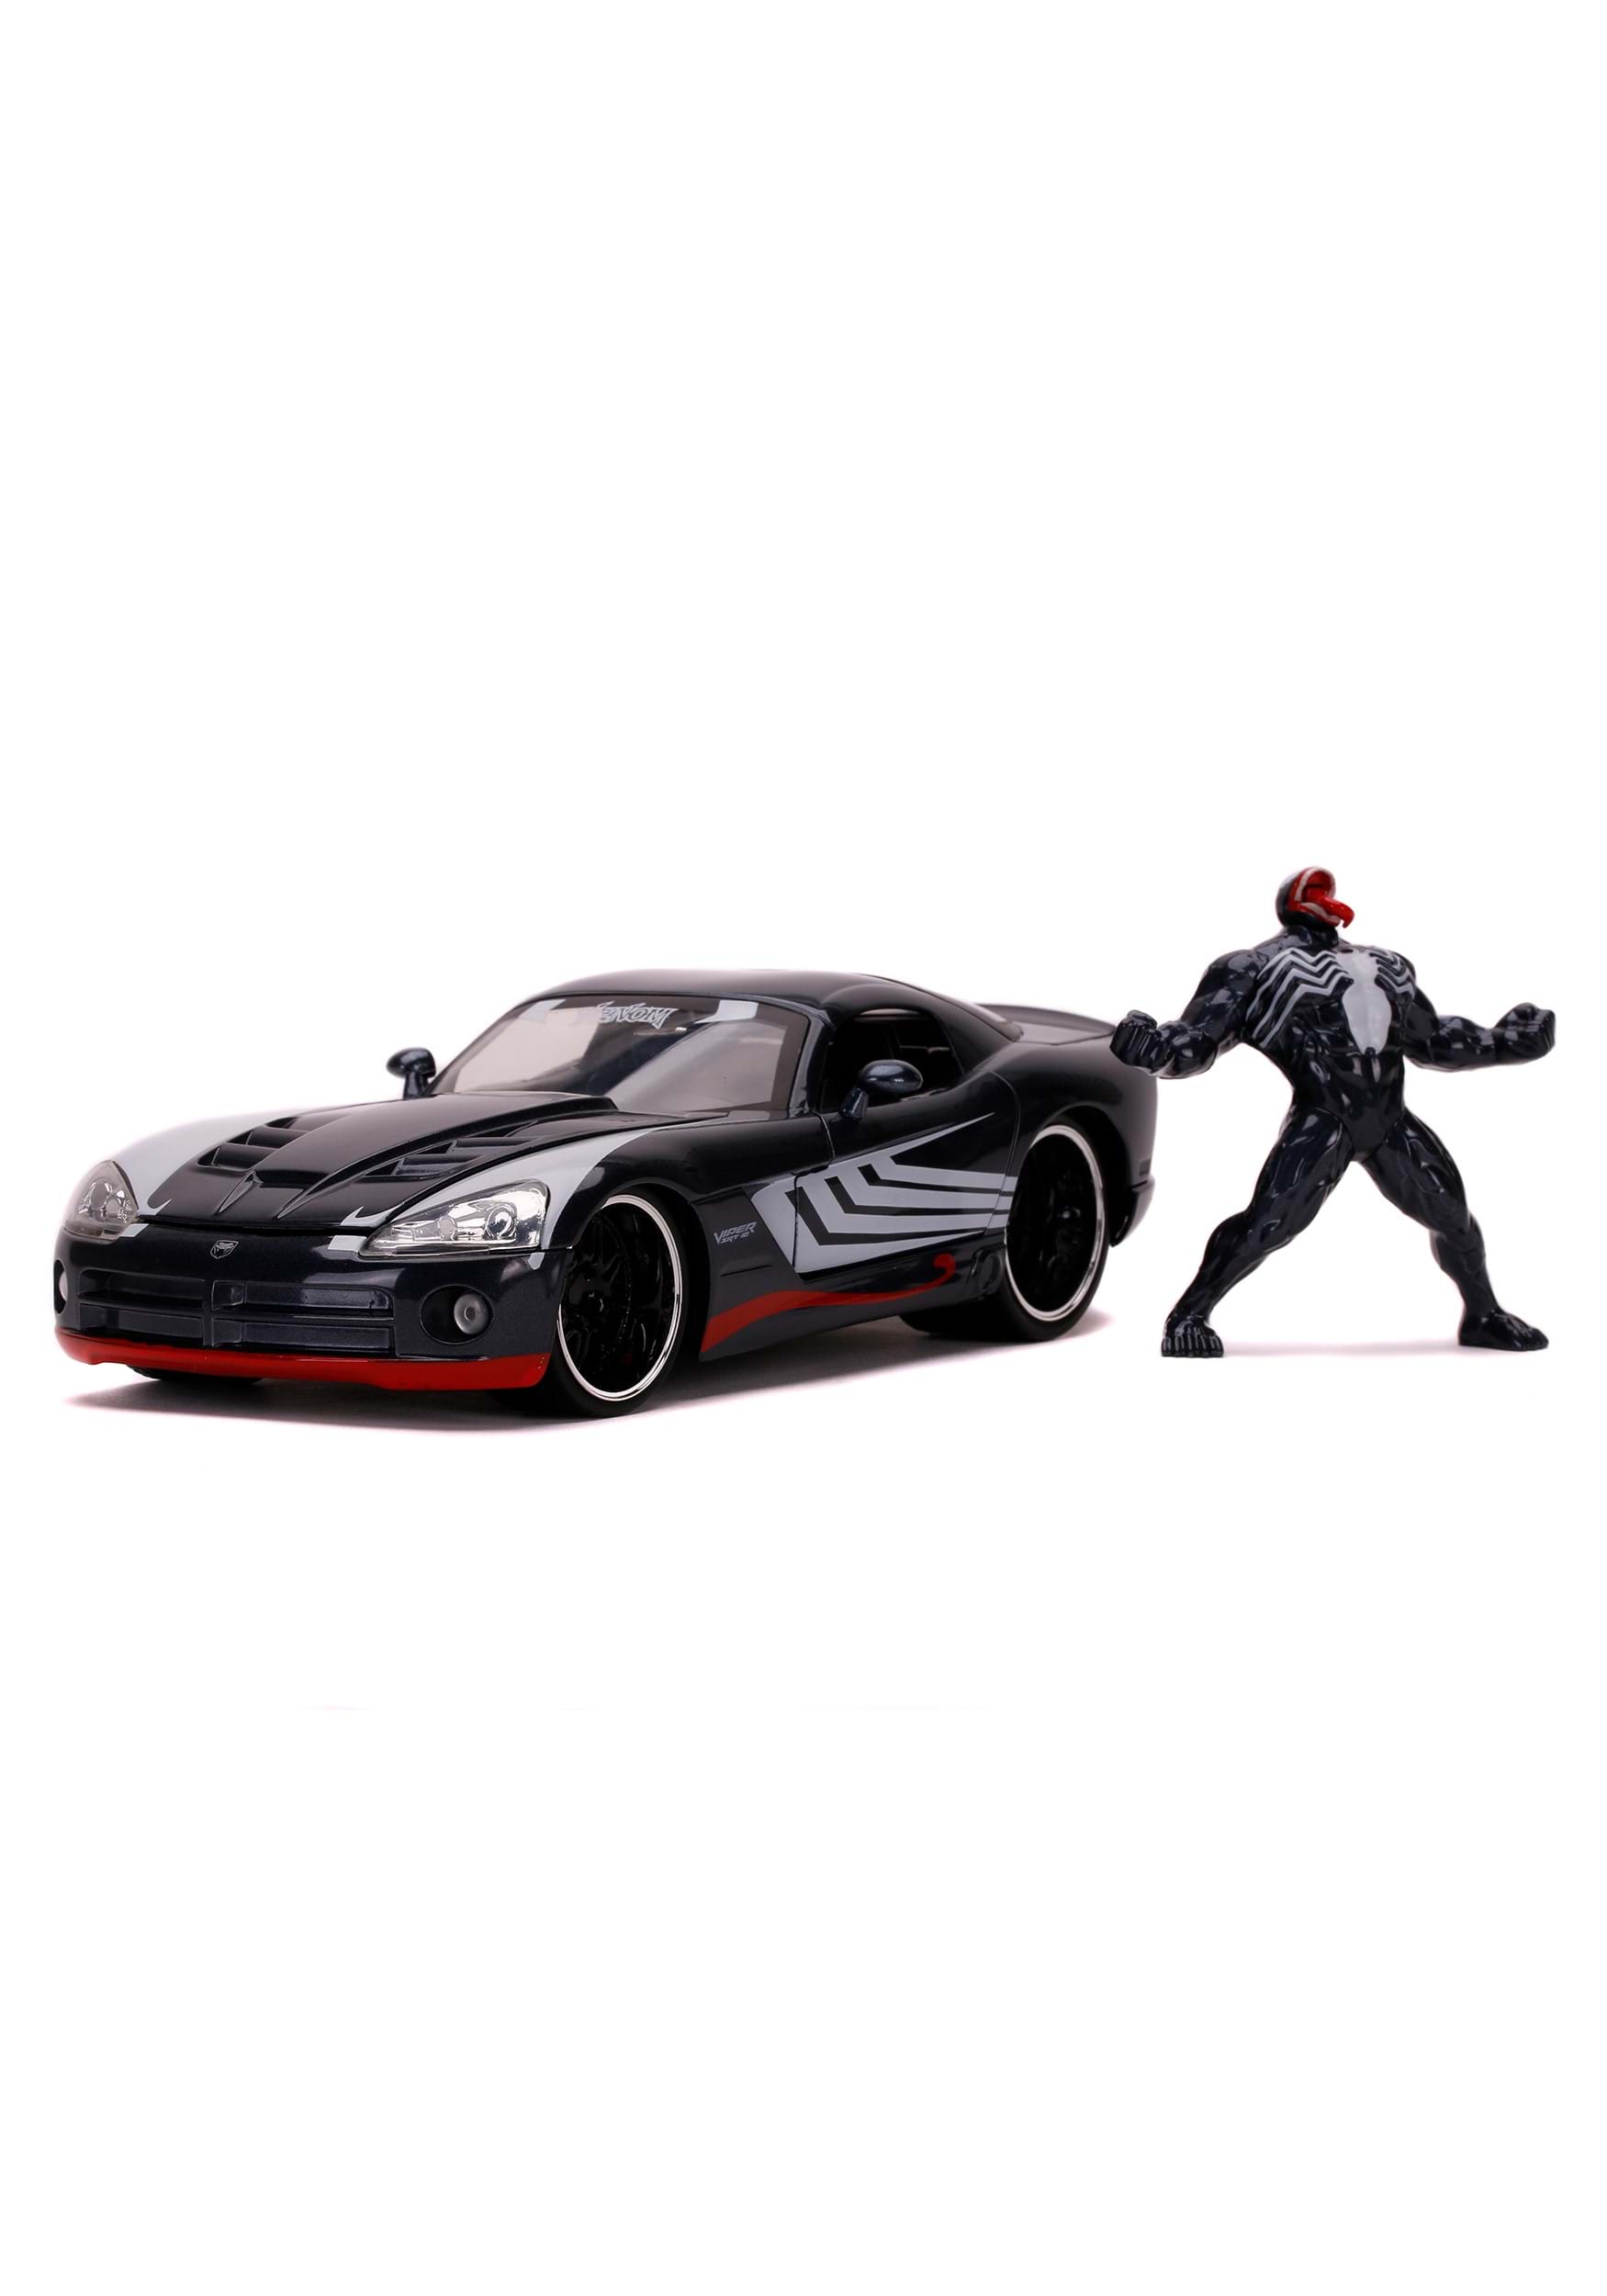 1:24 Scale 08 Dodge Viper w/ Marvel Venom Figure